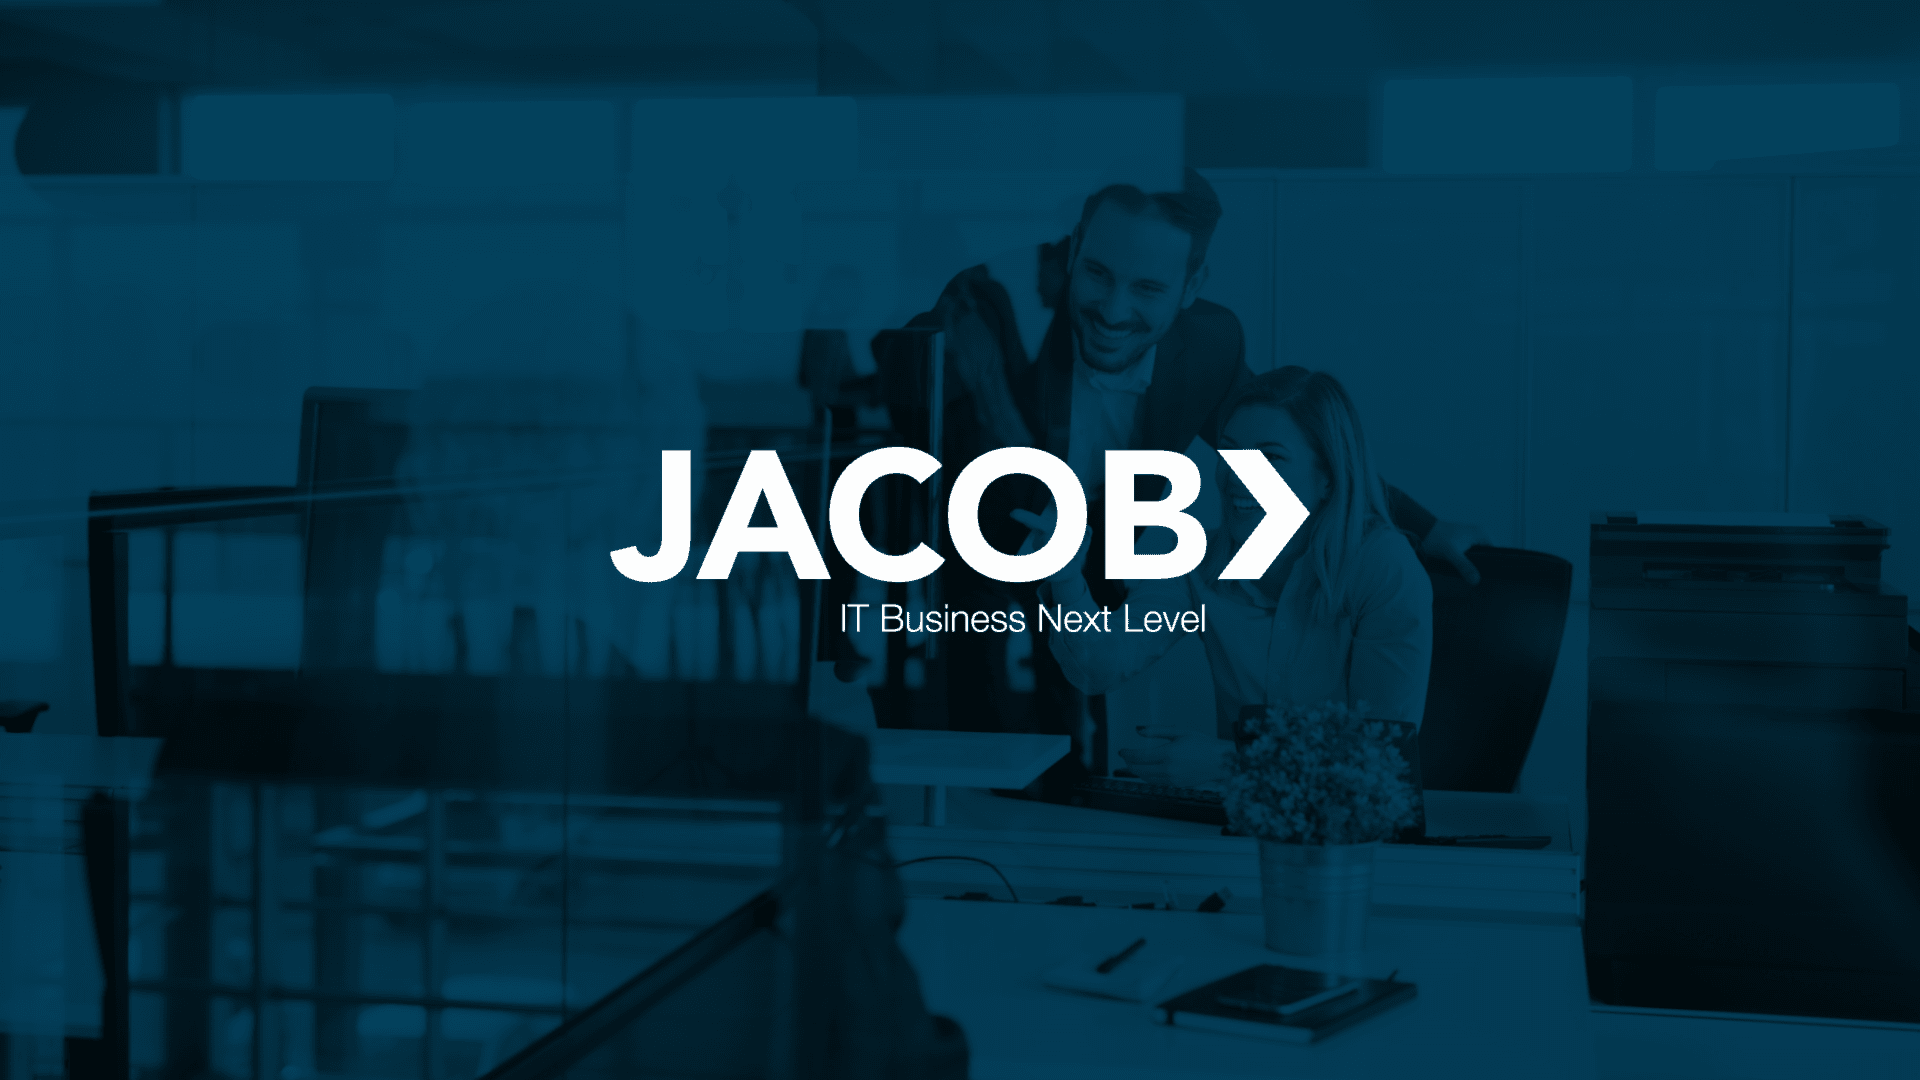 Konzeption, Design und Programmierung des Job- und Karriereportals von JACOB IT